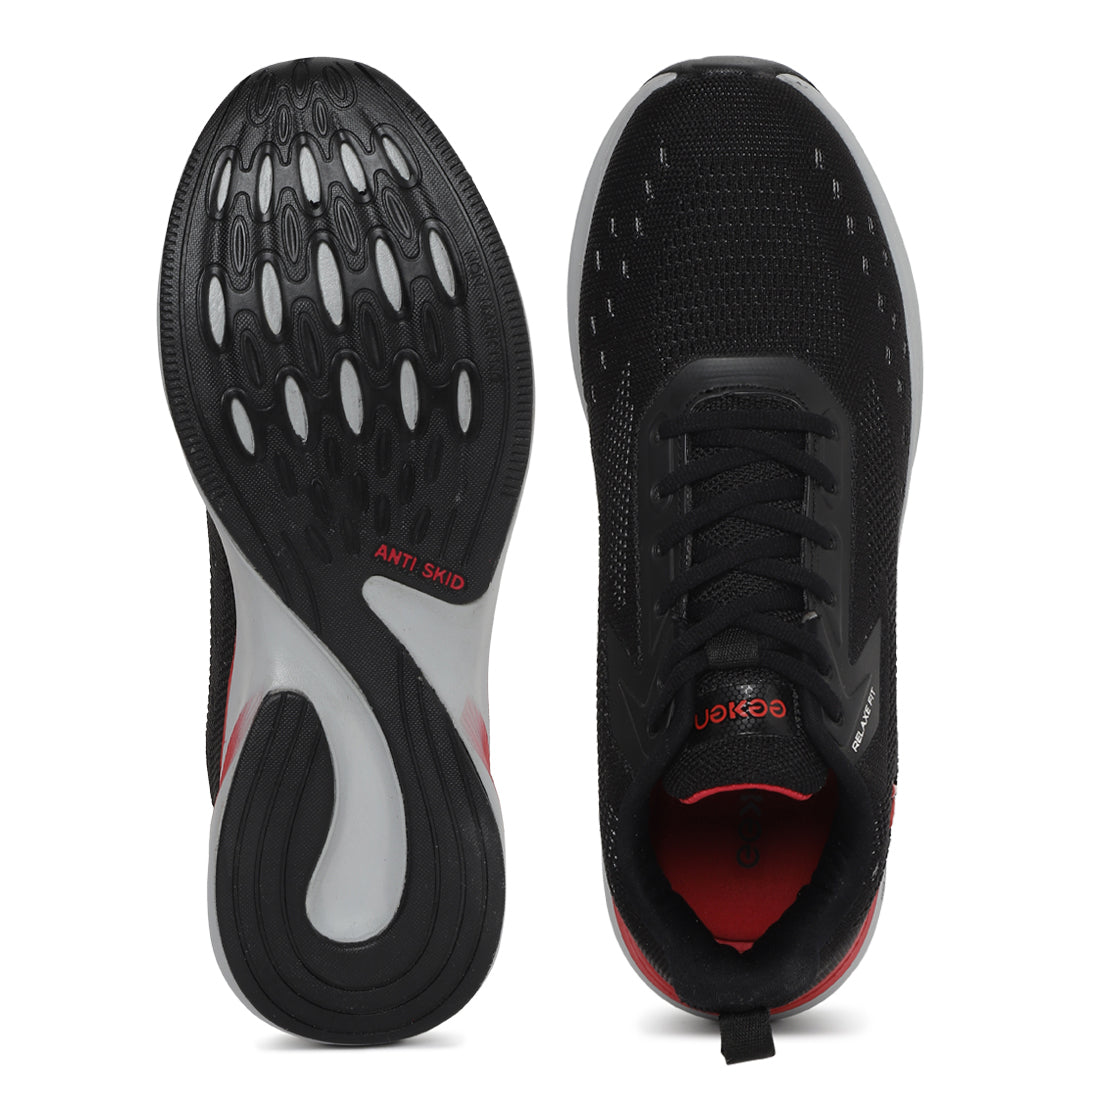 Eeken ESHGOA503 Black Athleisure Shoes For Men